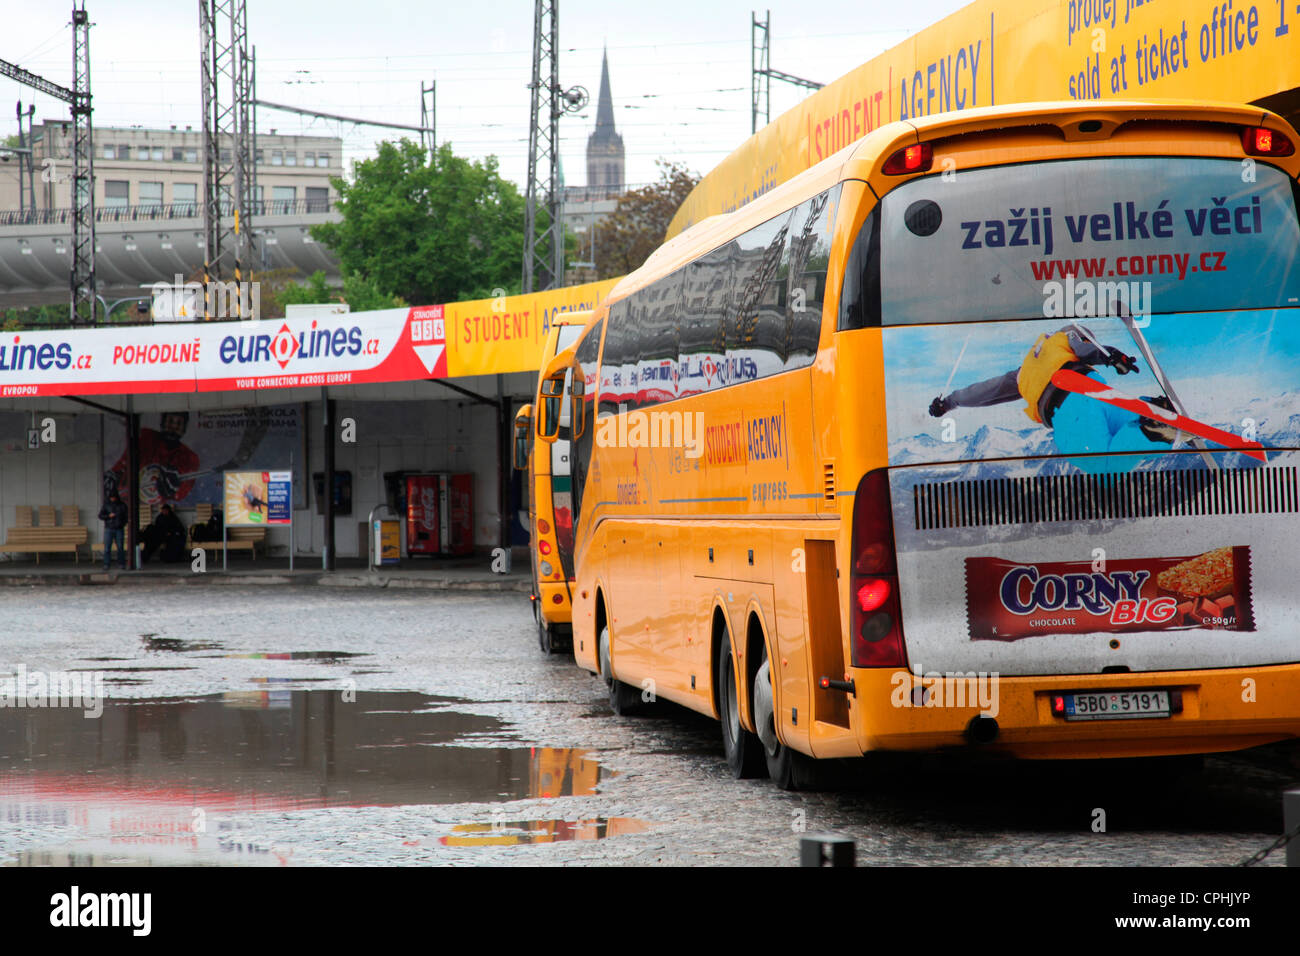 Una delle diverse stazioni di autobus a Praga, Florenc è un vivace incrocio per molti viaggiatori.molte destinazioni di autobus sono gestite dalla popolare Agenzia studentesca Foto Stock